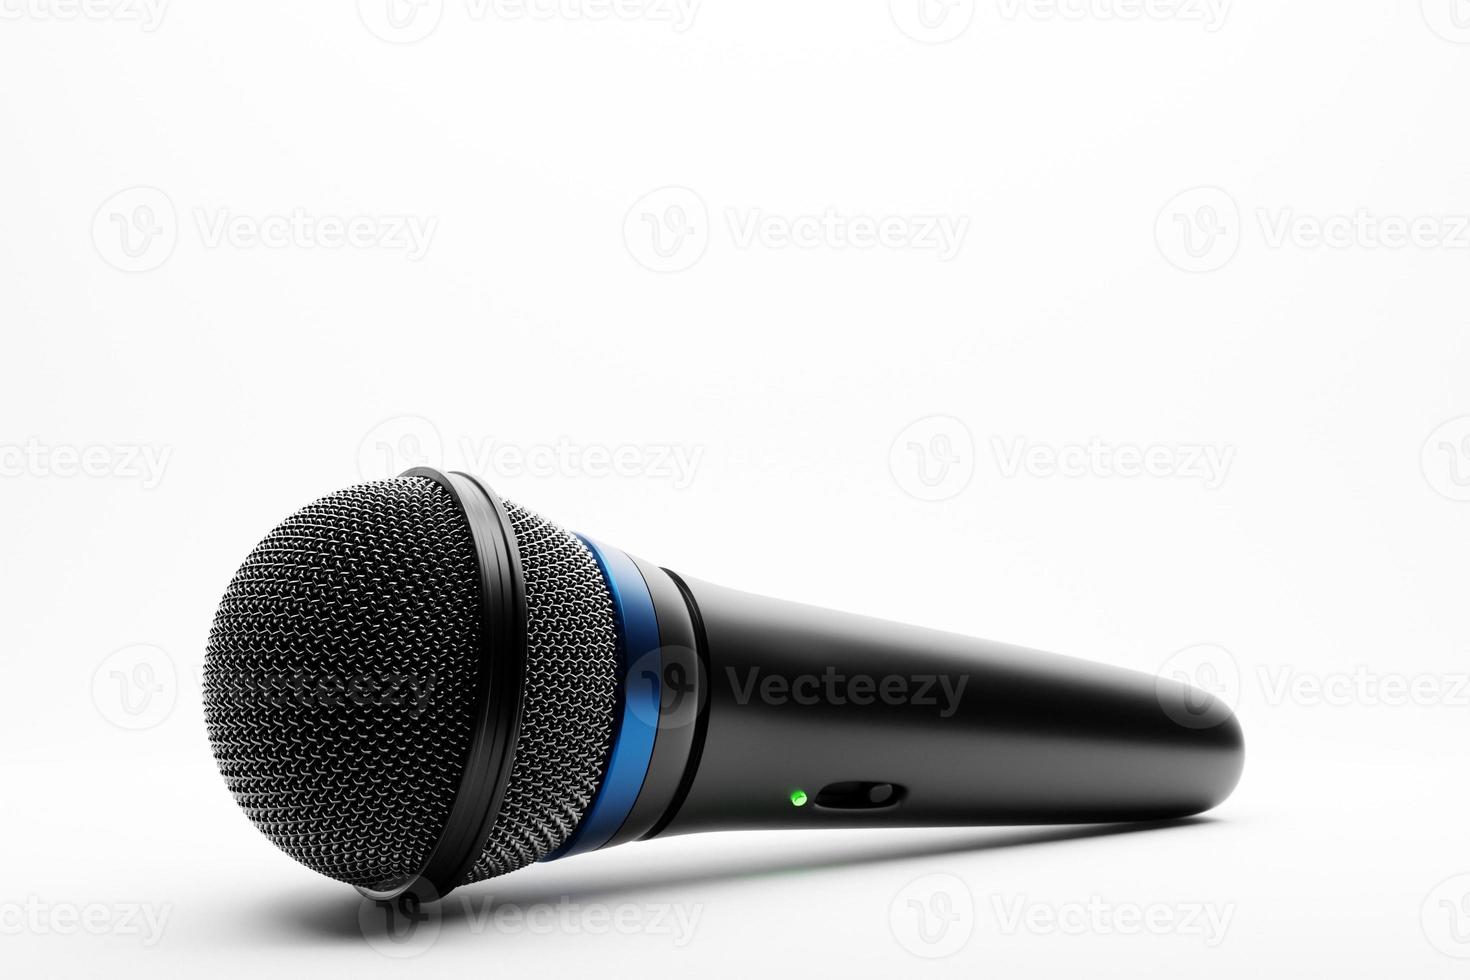 micrófono, modelo de forma redonda, ilustración 3d realista. premio de música, karaoke, radio y equipo de sonido de estudio de grabación foto